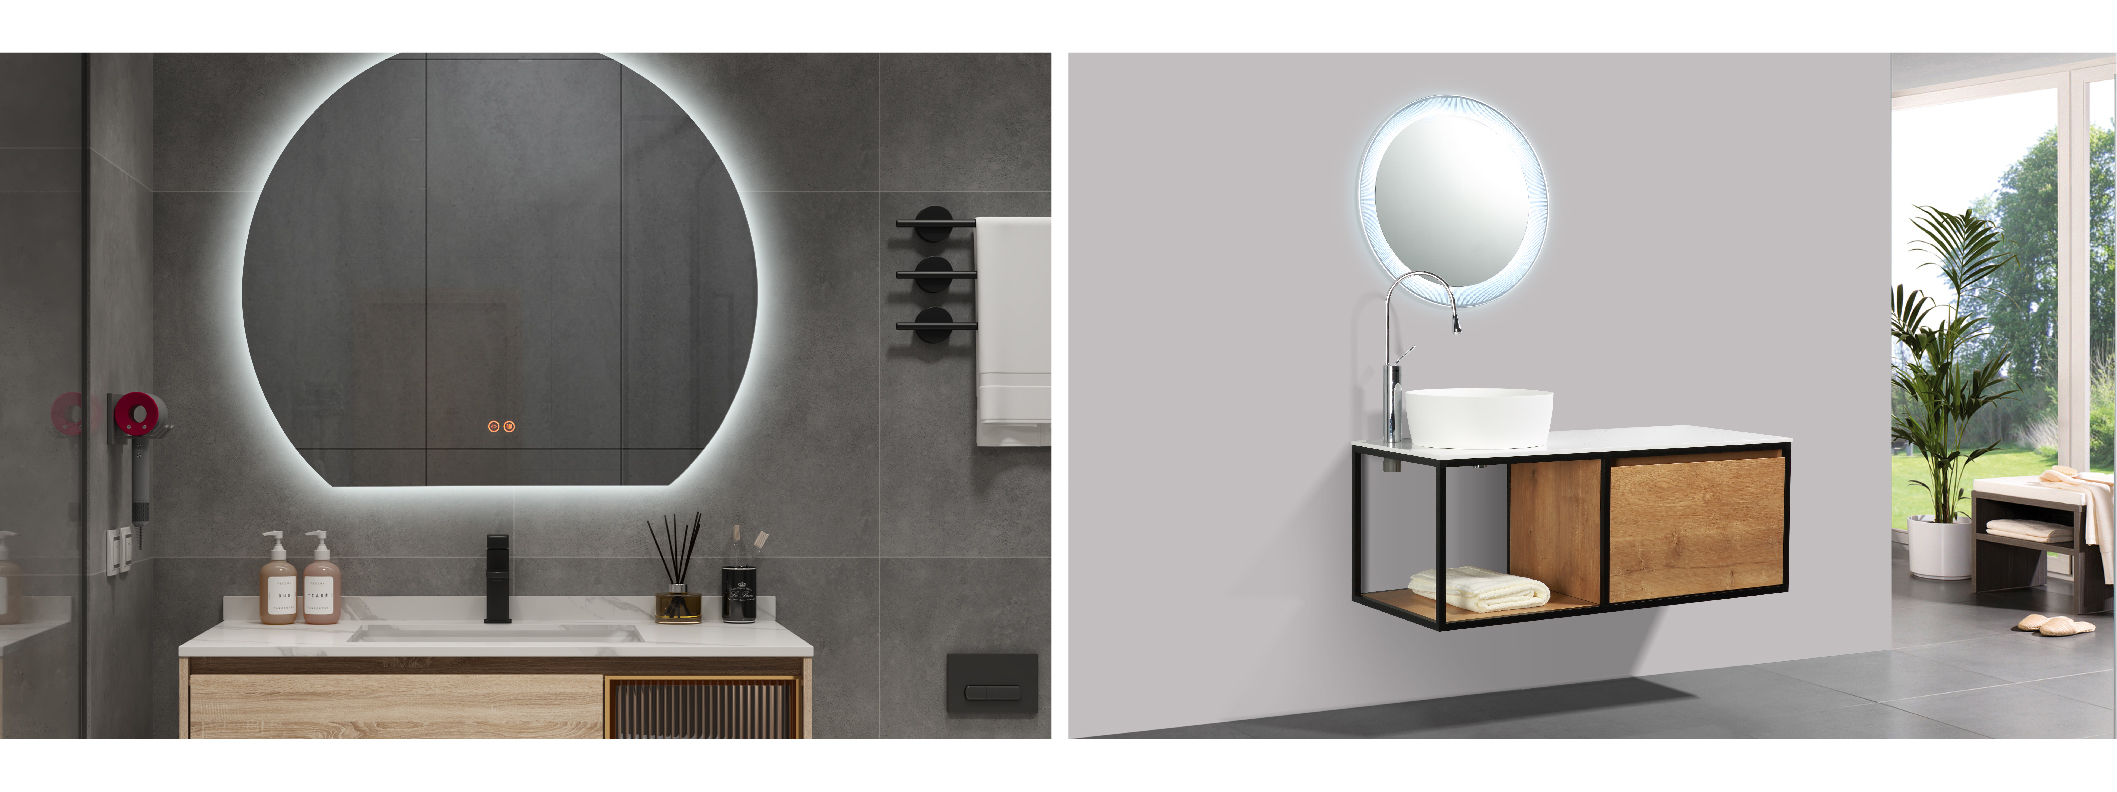 Baño, Feng Shui, equilibrio, paz, serenidad, vitalidad, espejos, LED y iluminación.